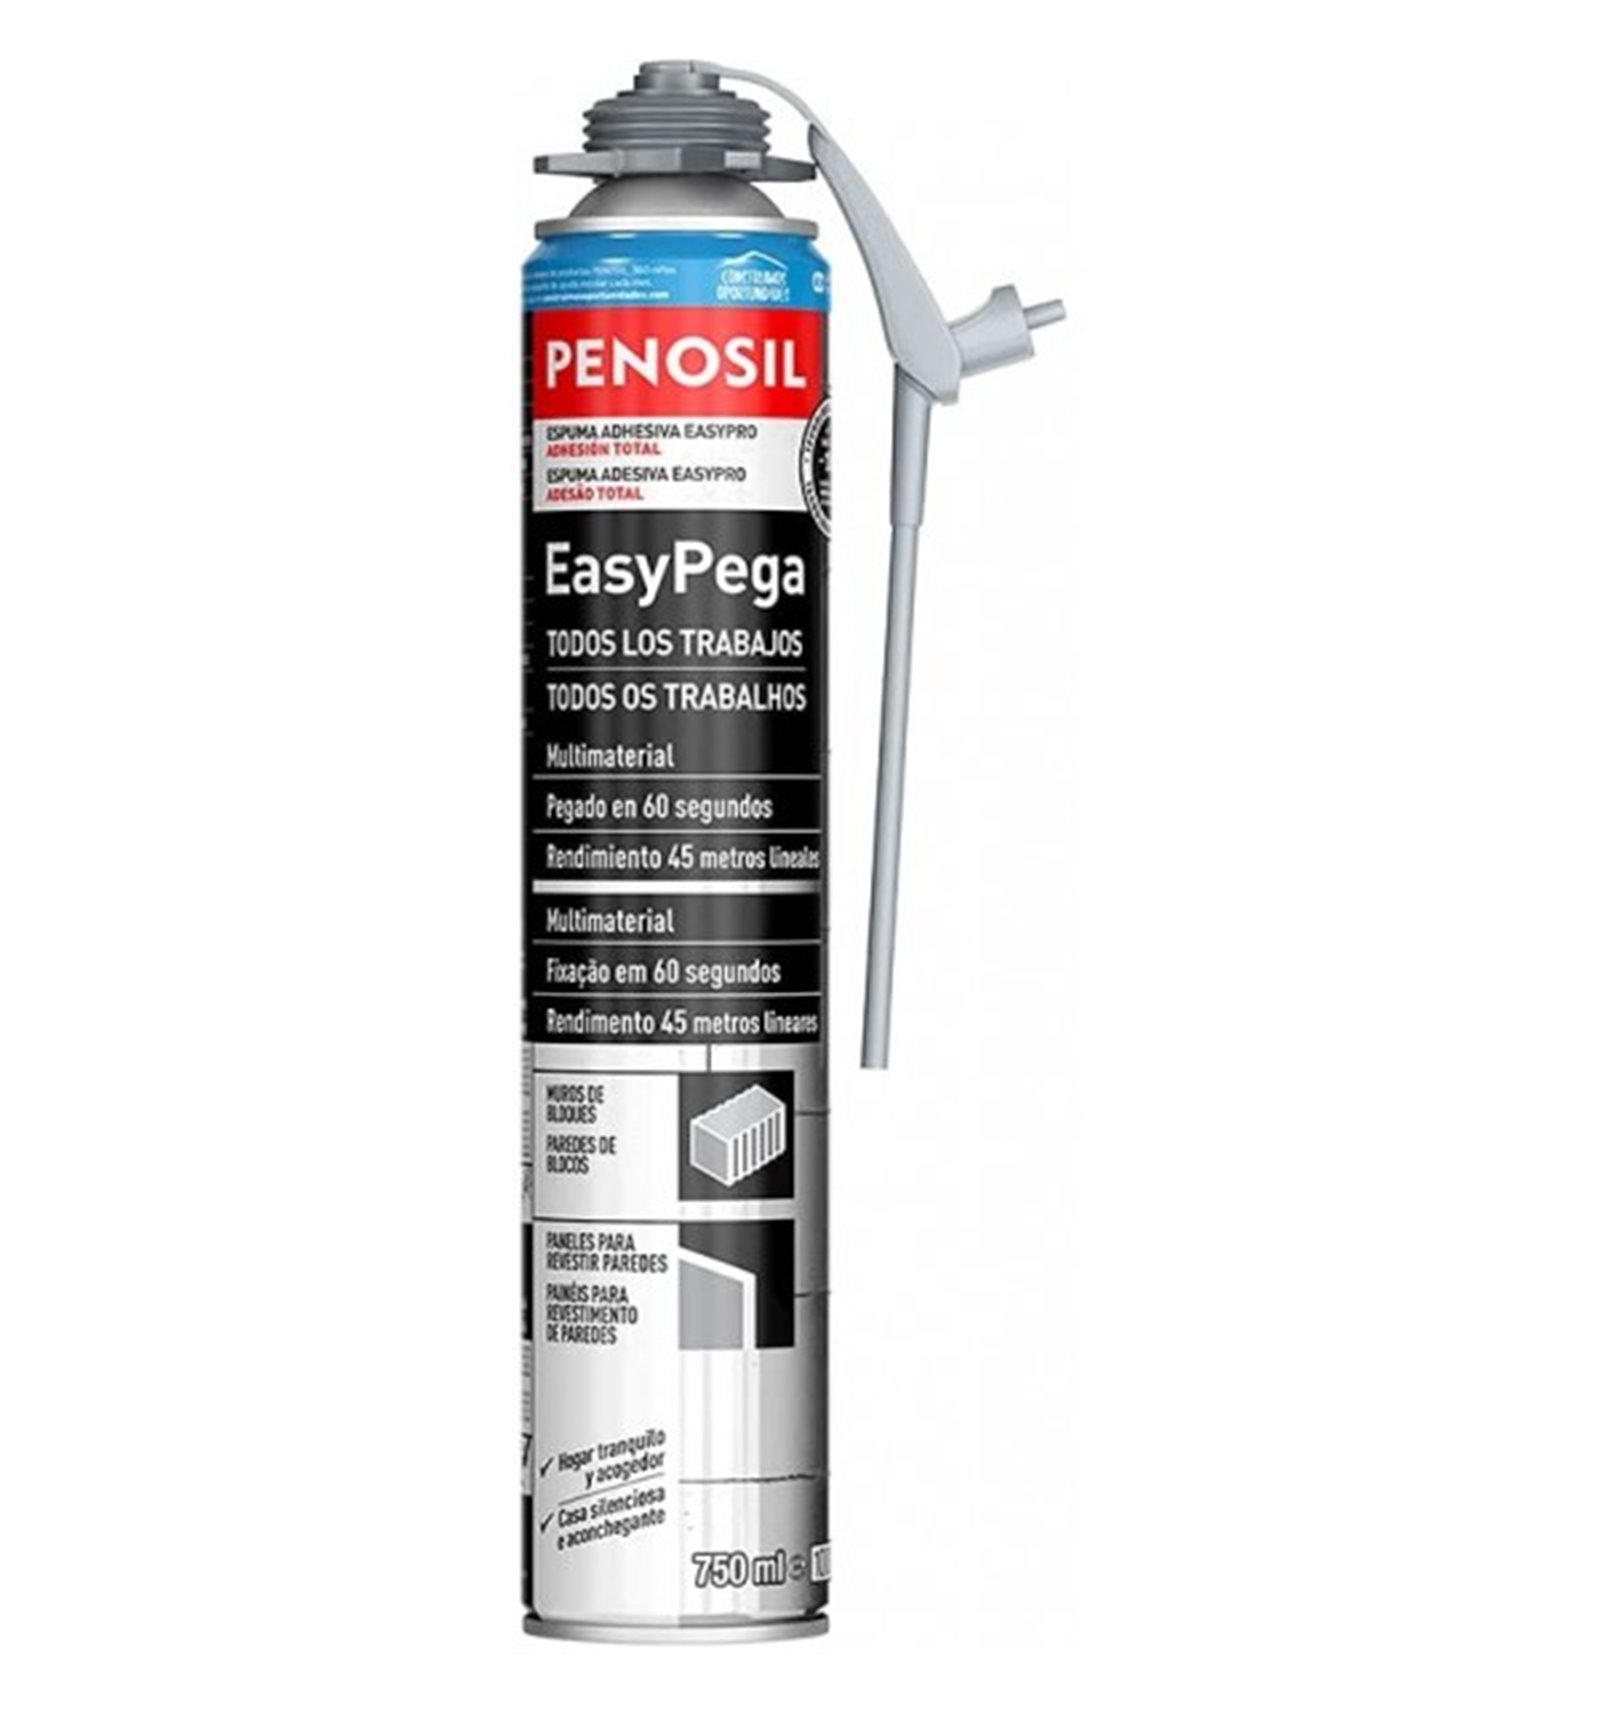 Espuma proyectable penosil easyspray 700 de penosil